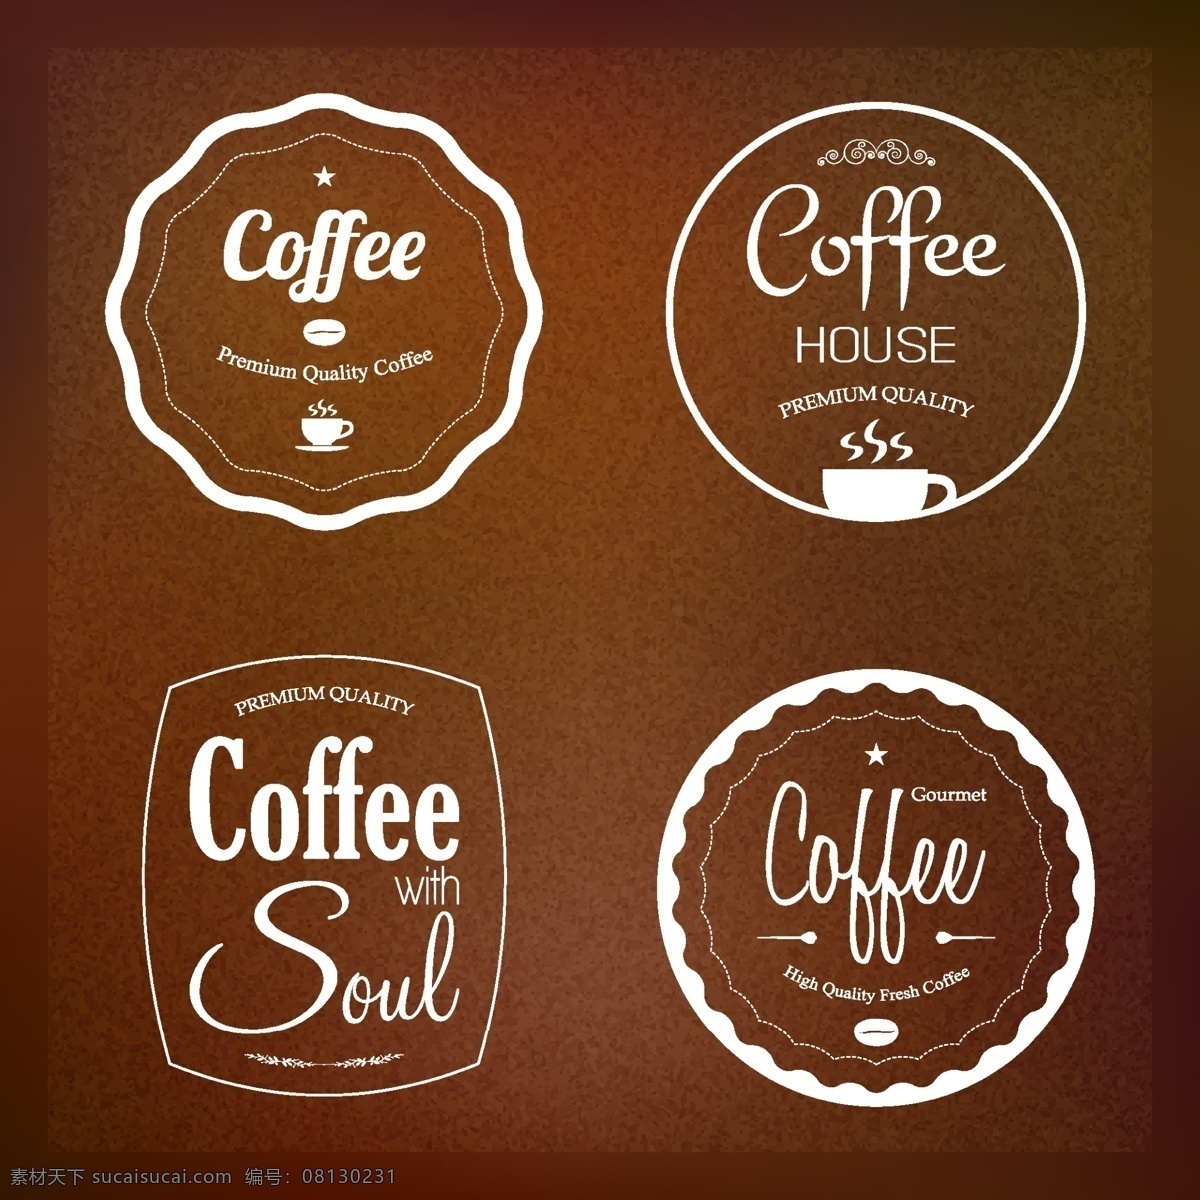 咖啡标签 咖啡 咖啡豆 咖啡屋 咖啡厅 标志 logo 咖啡背景 咖啡素材 营养 健康 手绘 背景 矢量 咖啡主题矢量 餐饮美食 生活百科